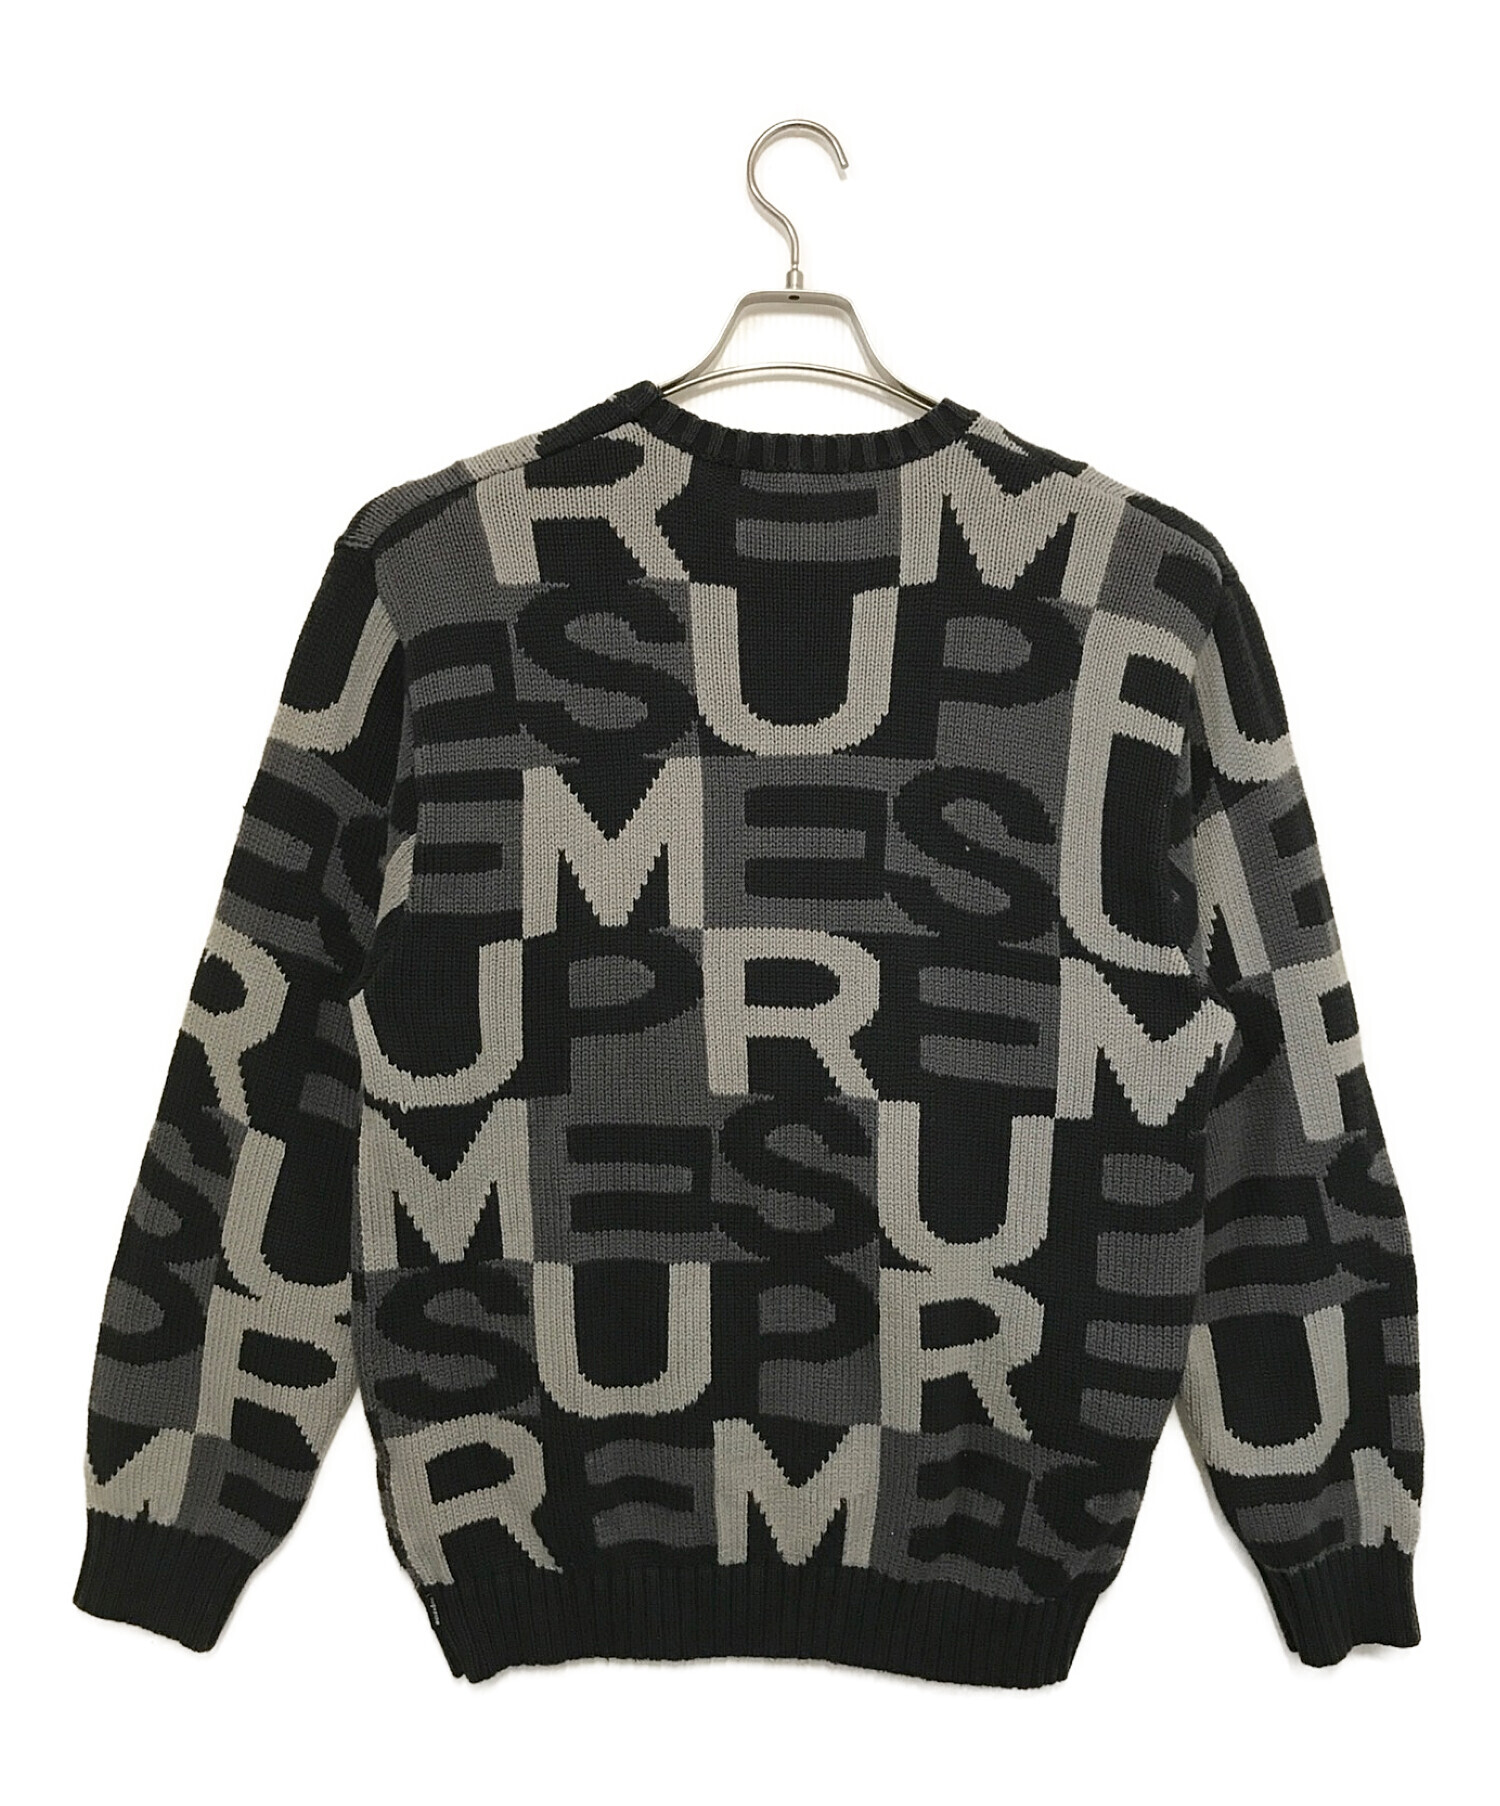 SUPREME (シュプリーム) Big Letters Sweater ブラック×グレー サイズ:M